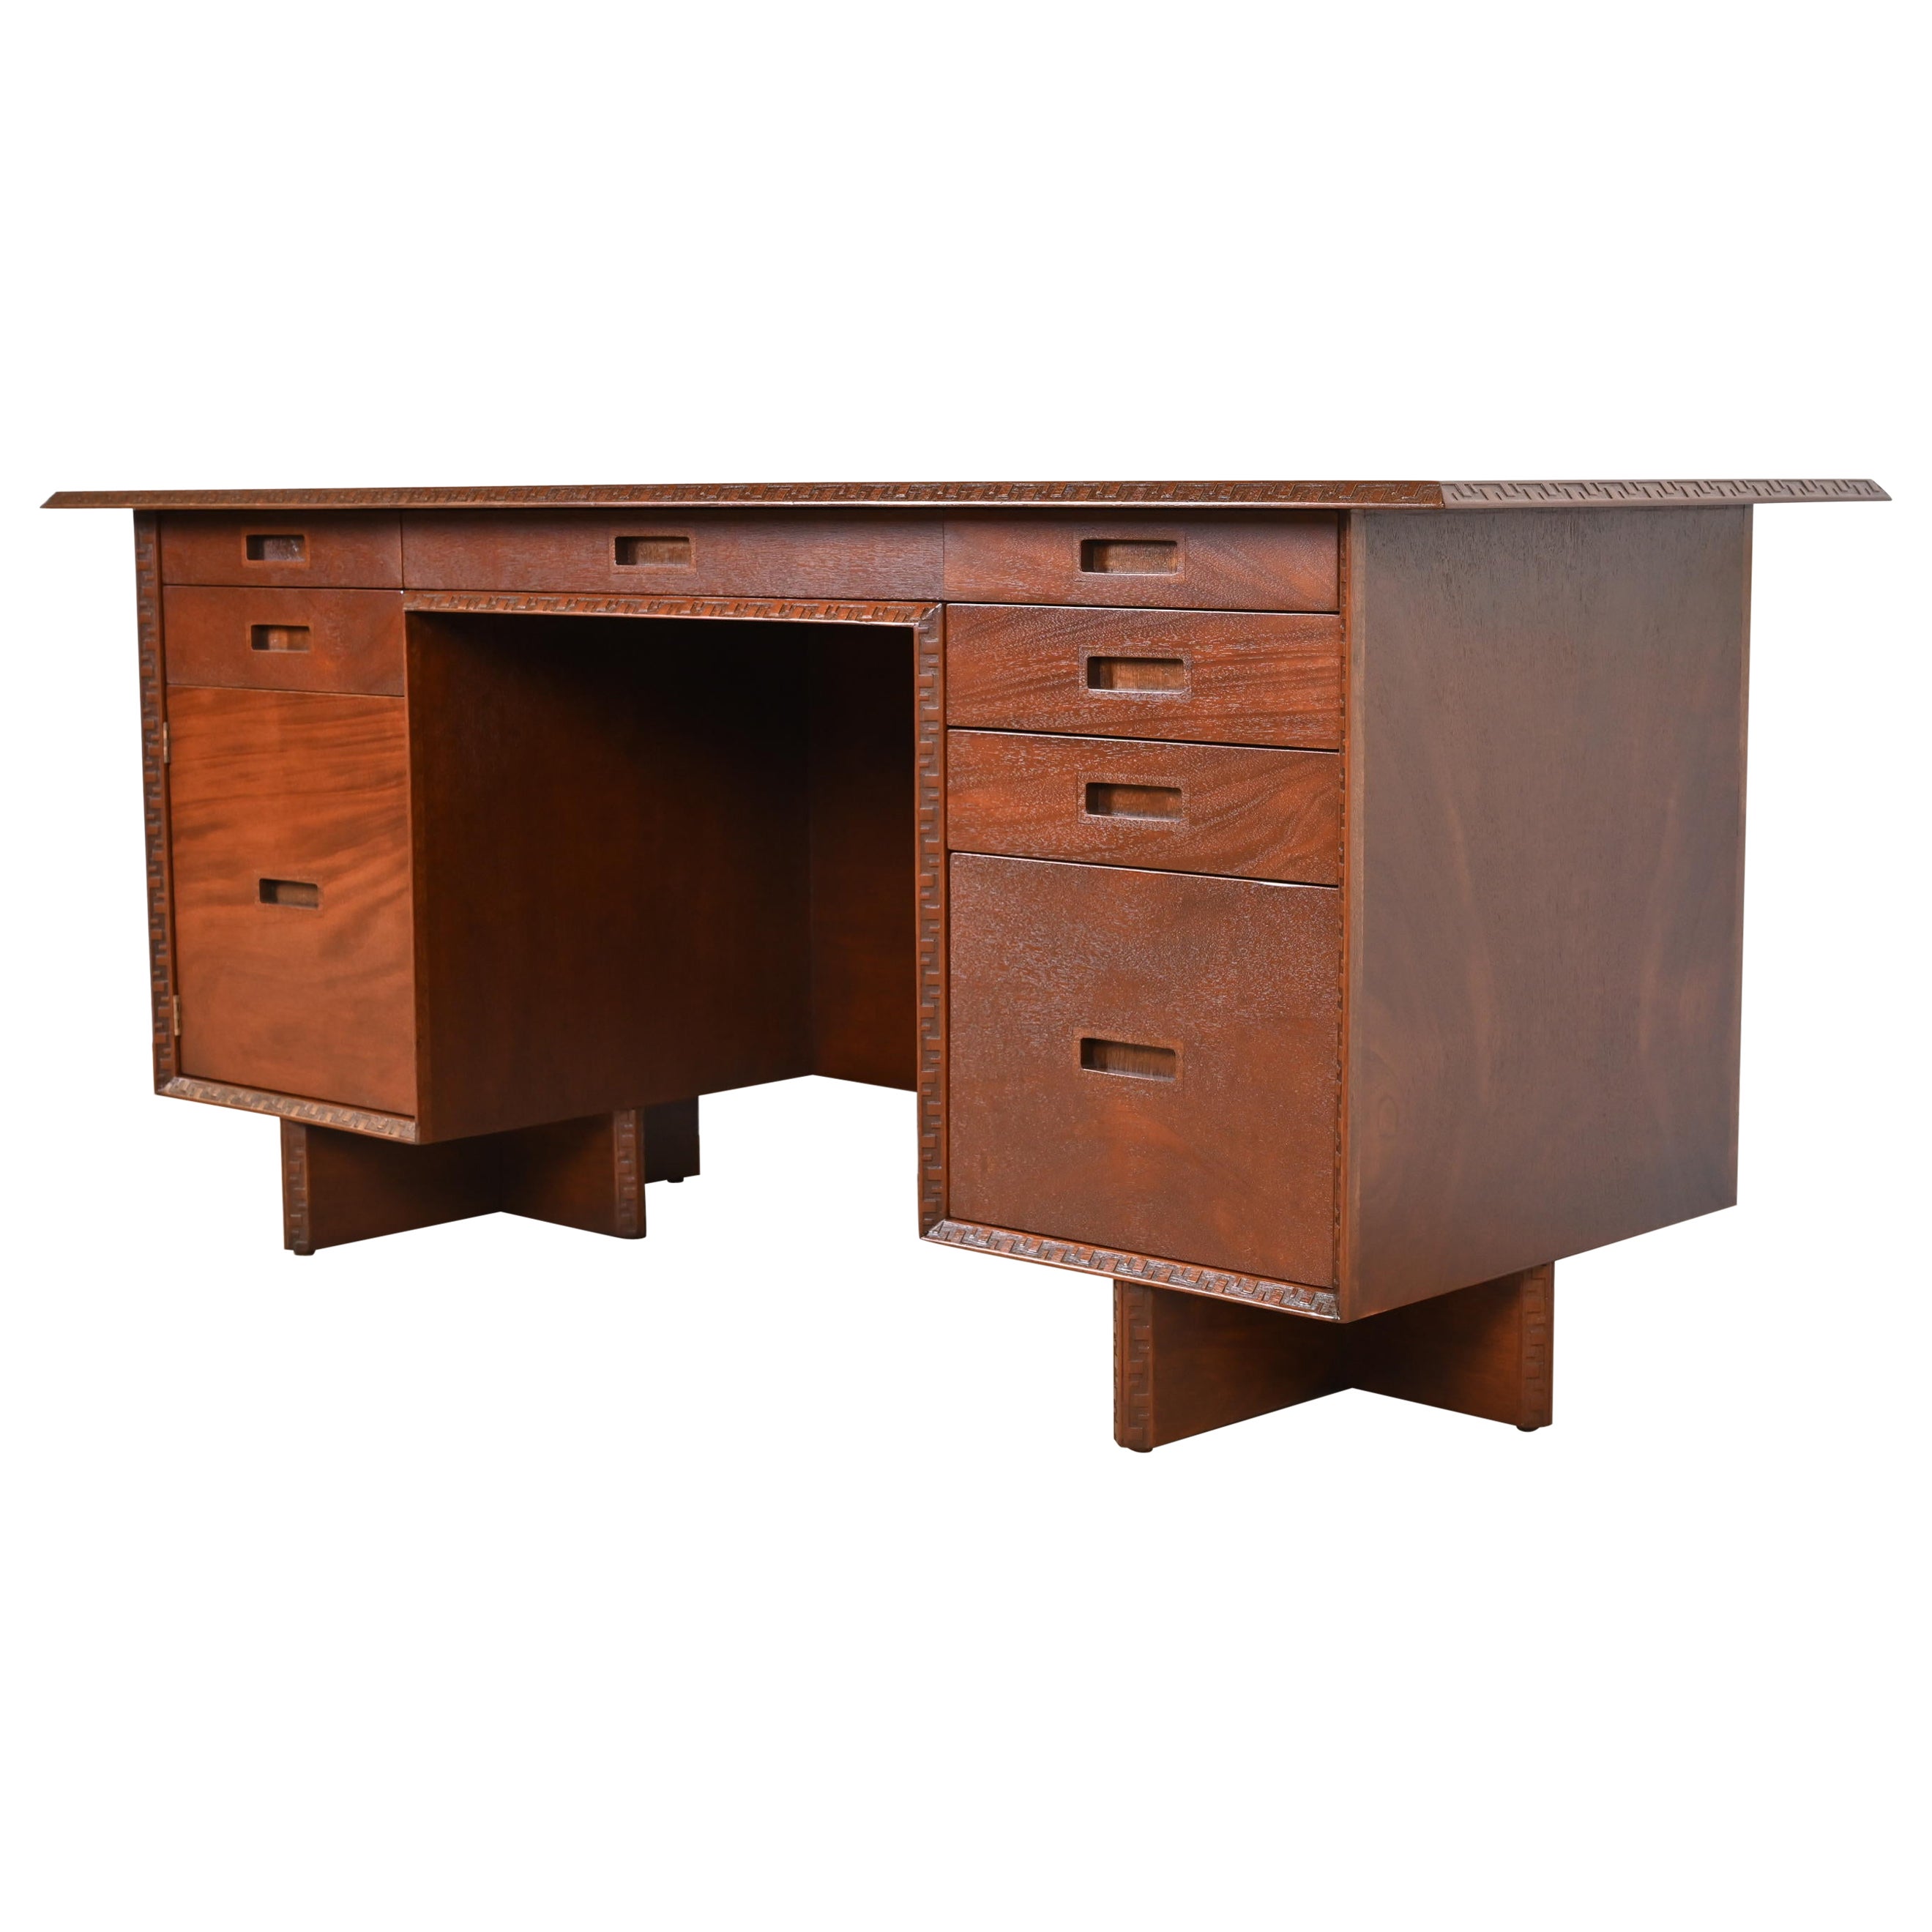 Executive-Schreibtisch aus Taliesin-Mahagoni mit doppeltem Sockel von Frank Lloyd Wright, restauriert